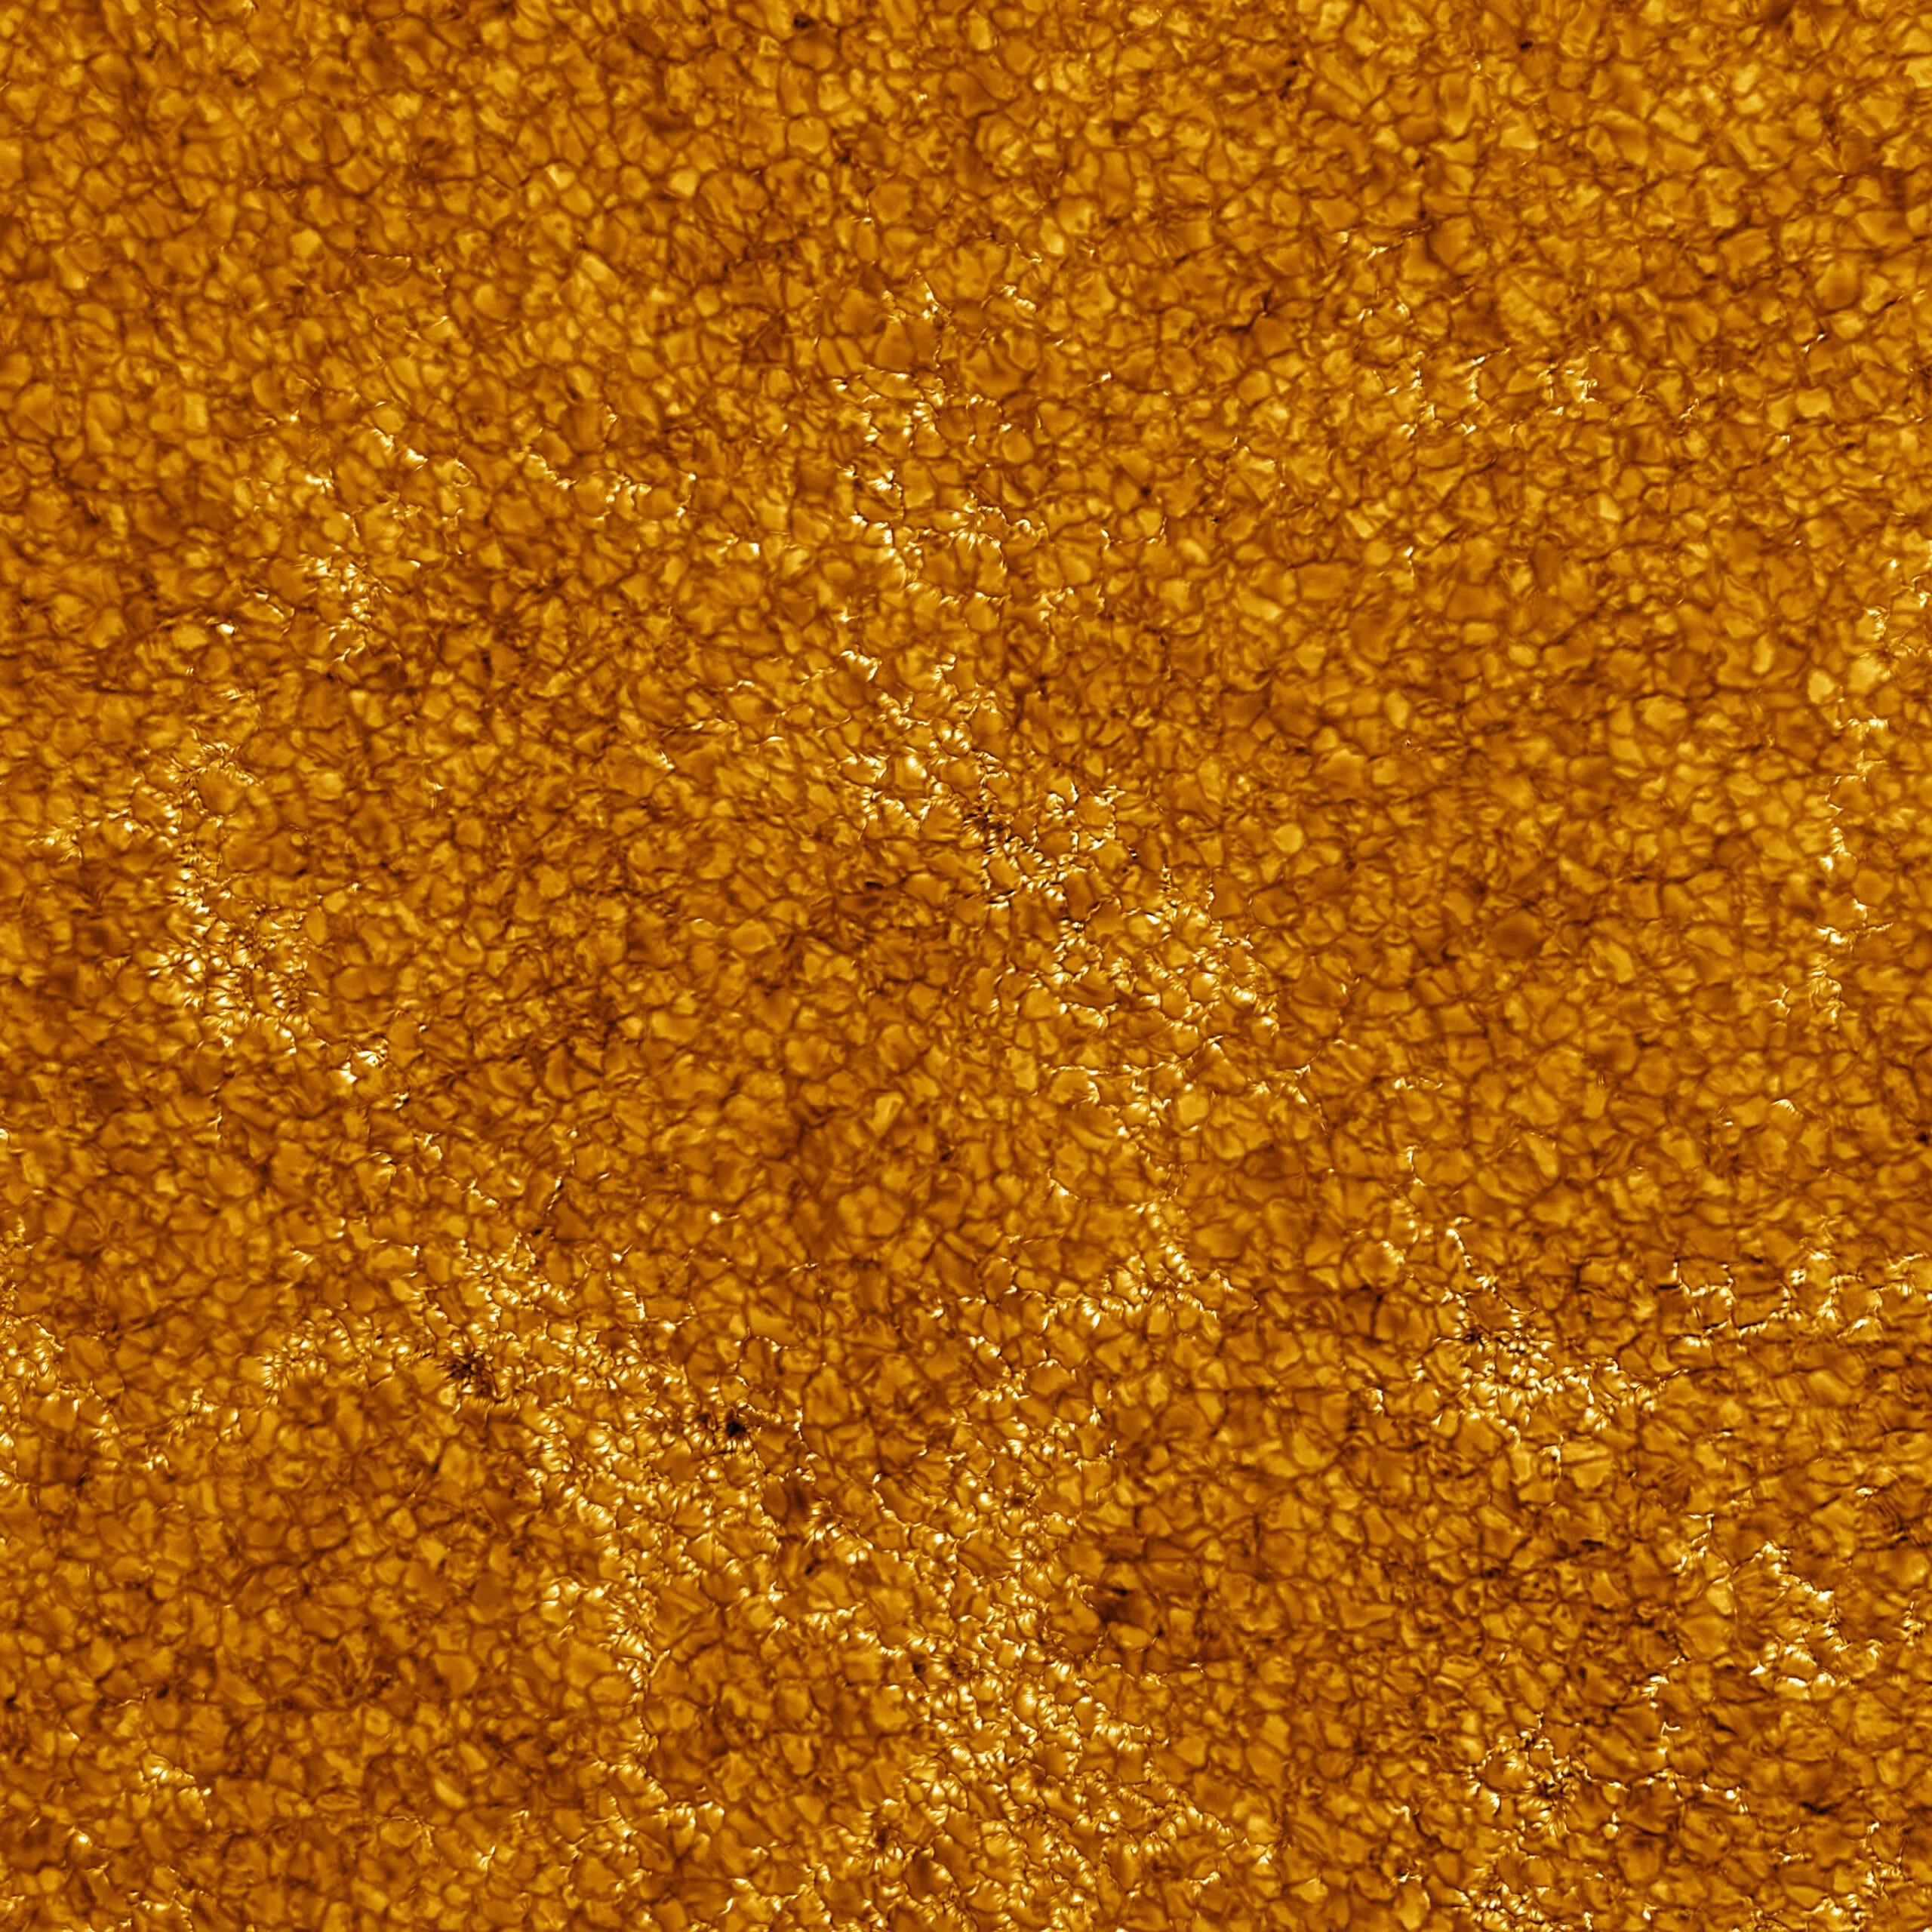 丹尼尔-K-井上太阳望远镜发布太阳表面新图像